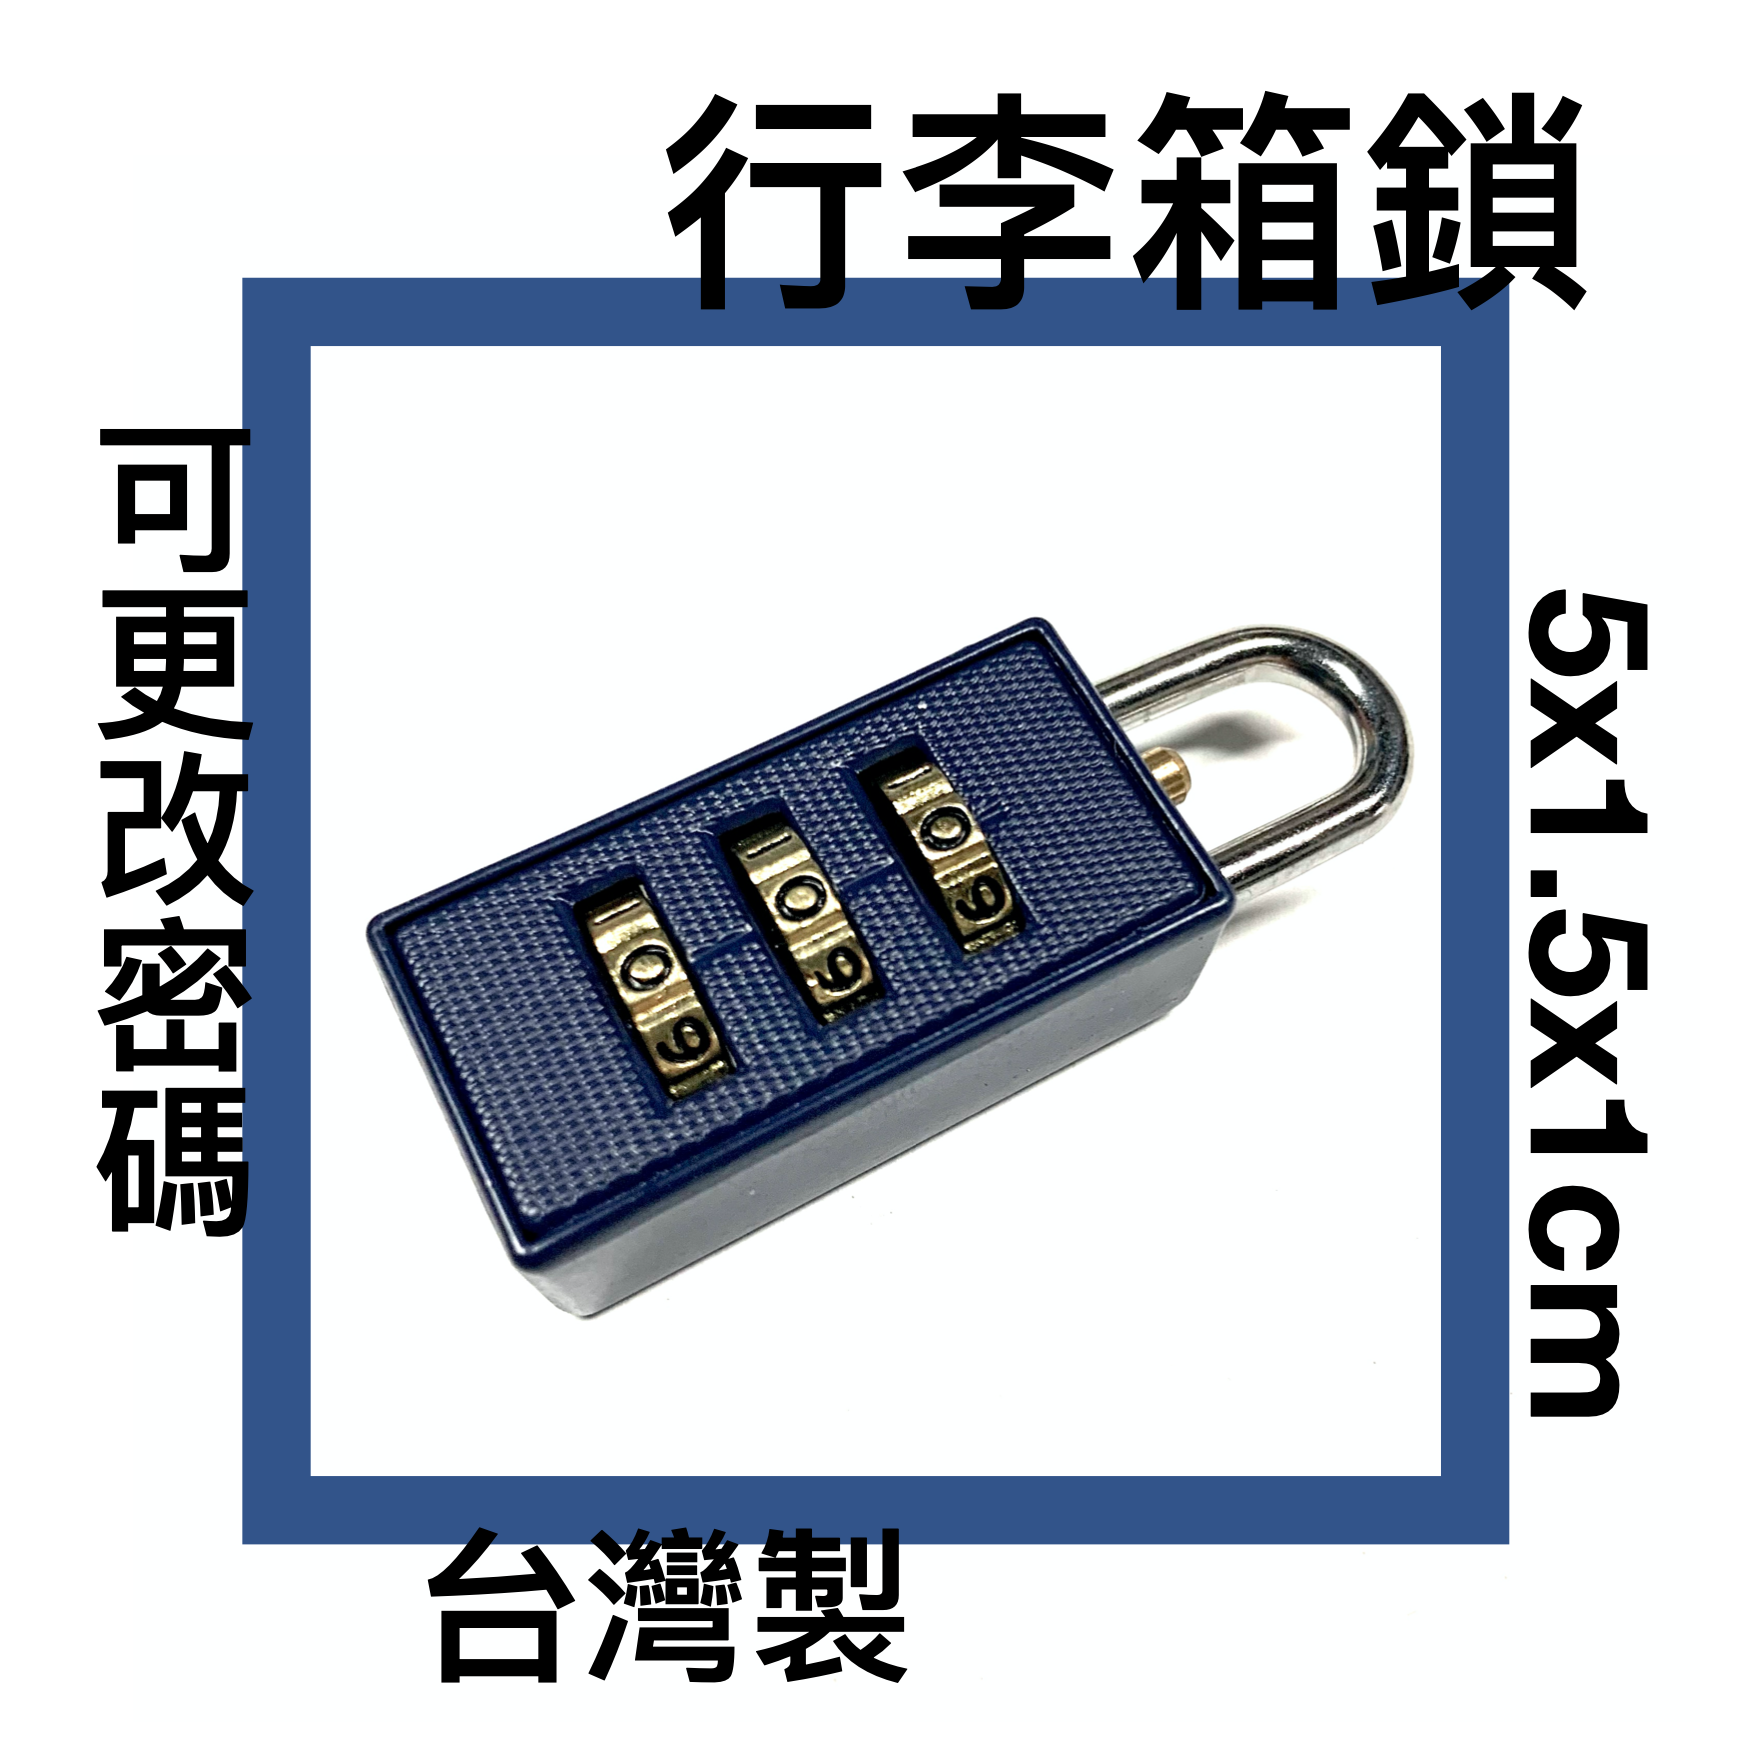 ■川鈺■ 鎖 密碼鎖 旅行箱鎖 公事包鎖 三位數 台灣製 5x1.5x1cm 四色隨機出貨 *1入